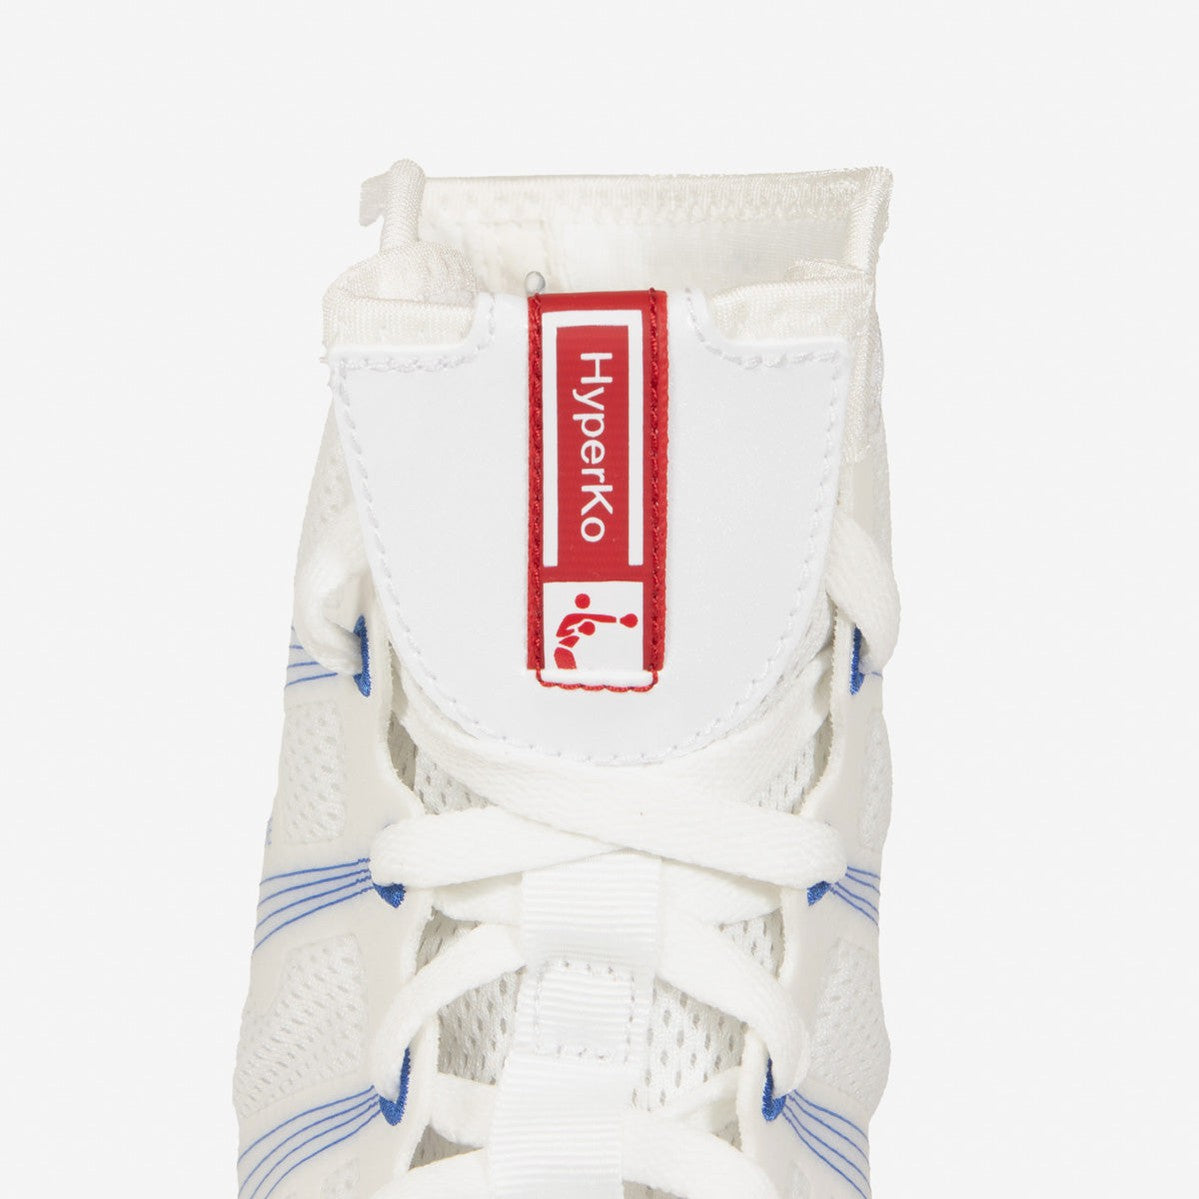 Botas de boxeo Nike Hyperko Blanco-Rojo